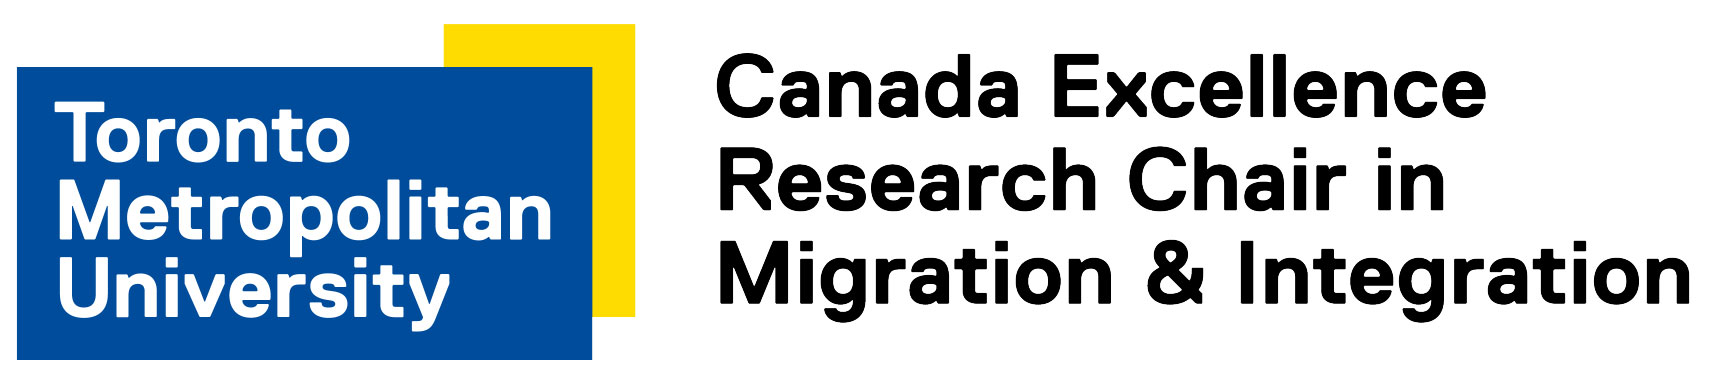 CERC Migration logo